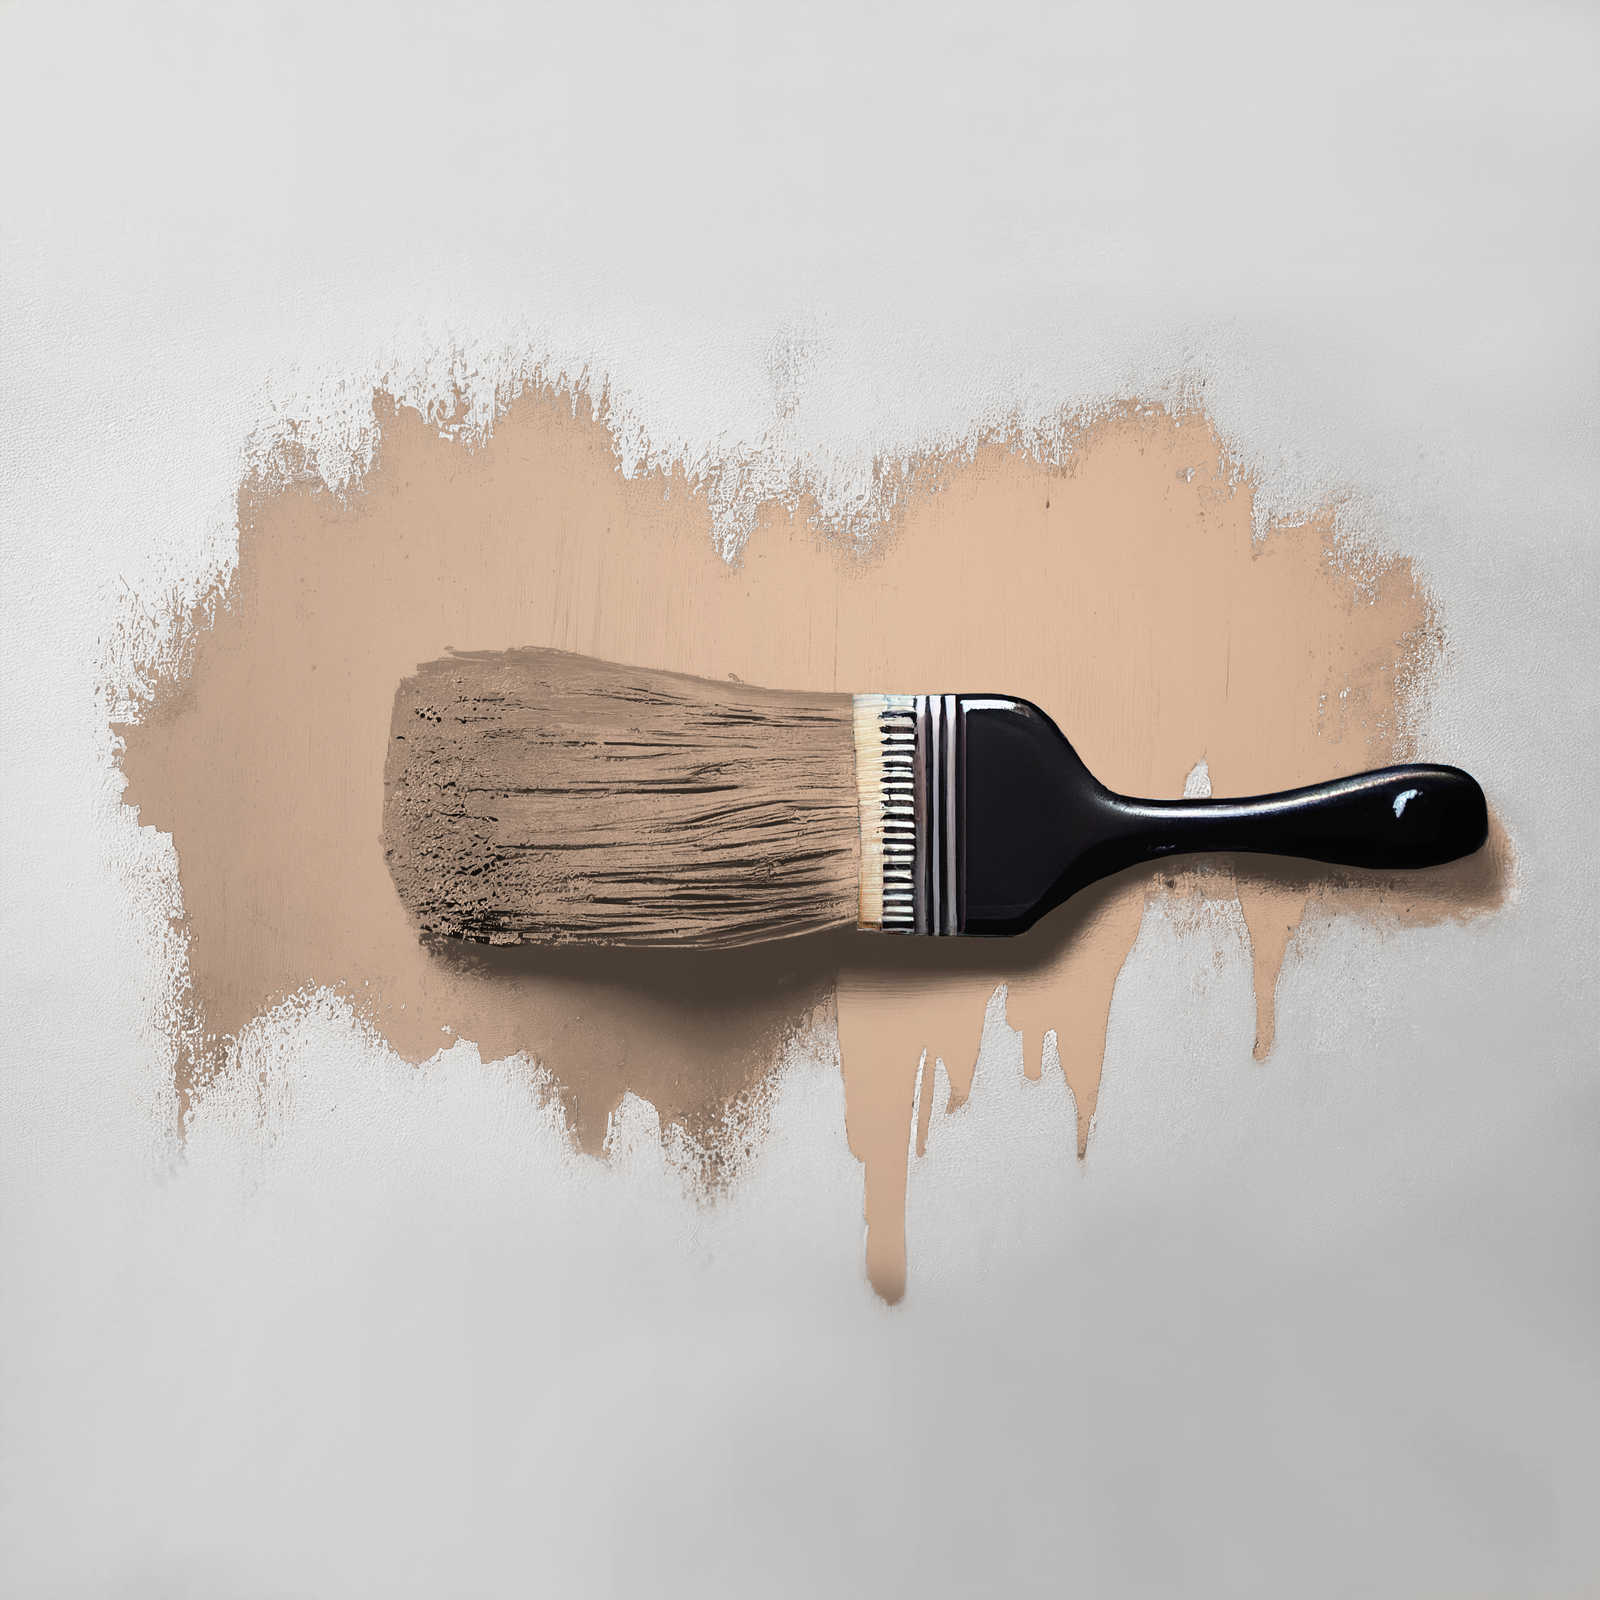             Pittura murale TCK6021 »Lovely Lentil« in beige caldo – 2,5 litri
        